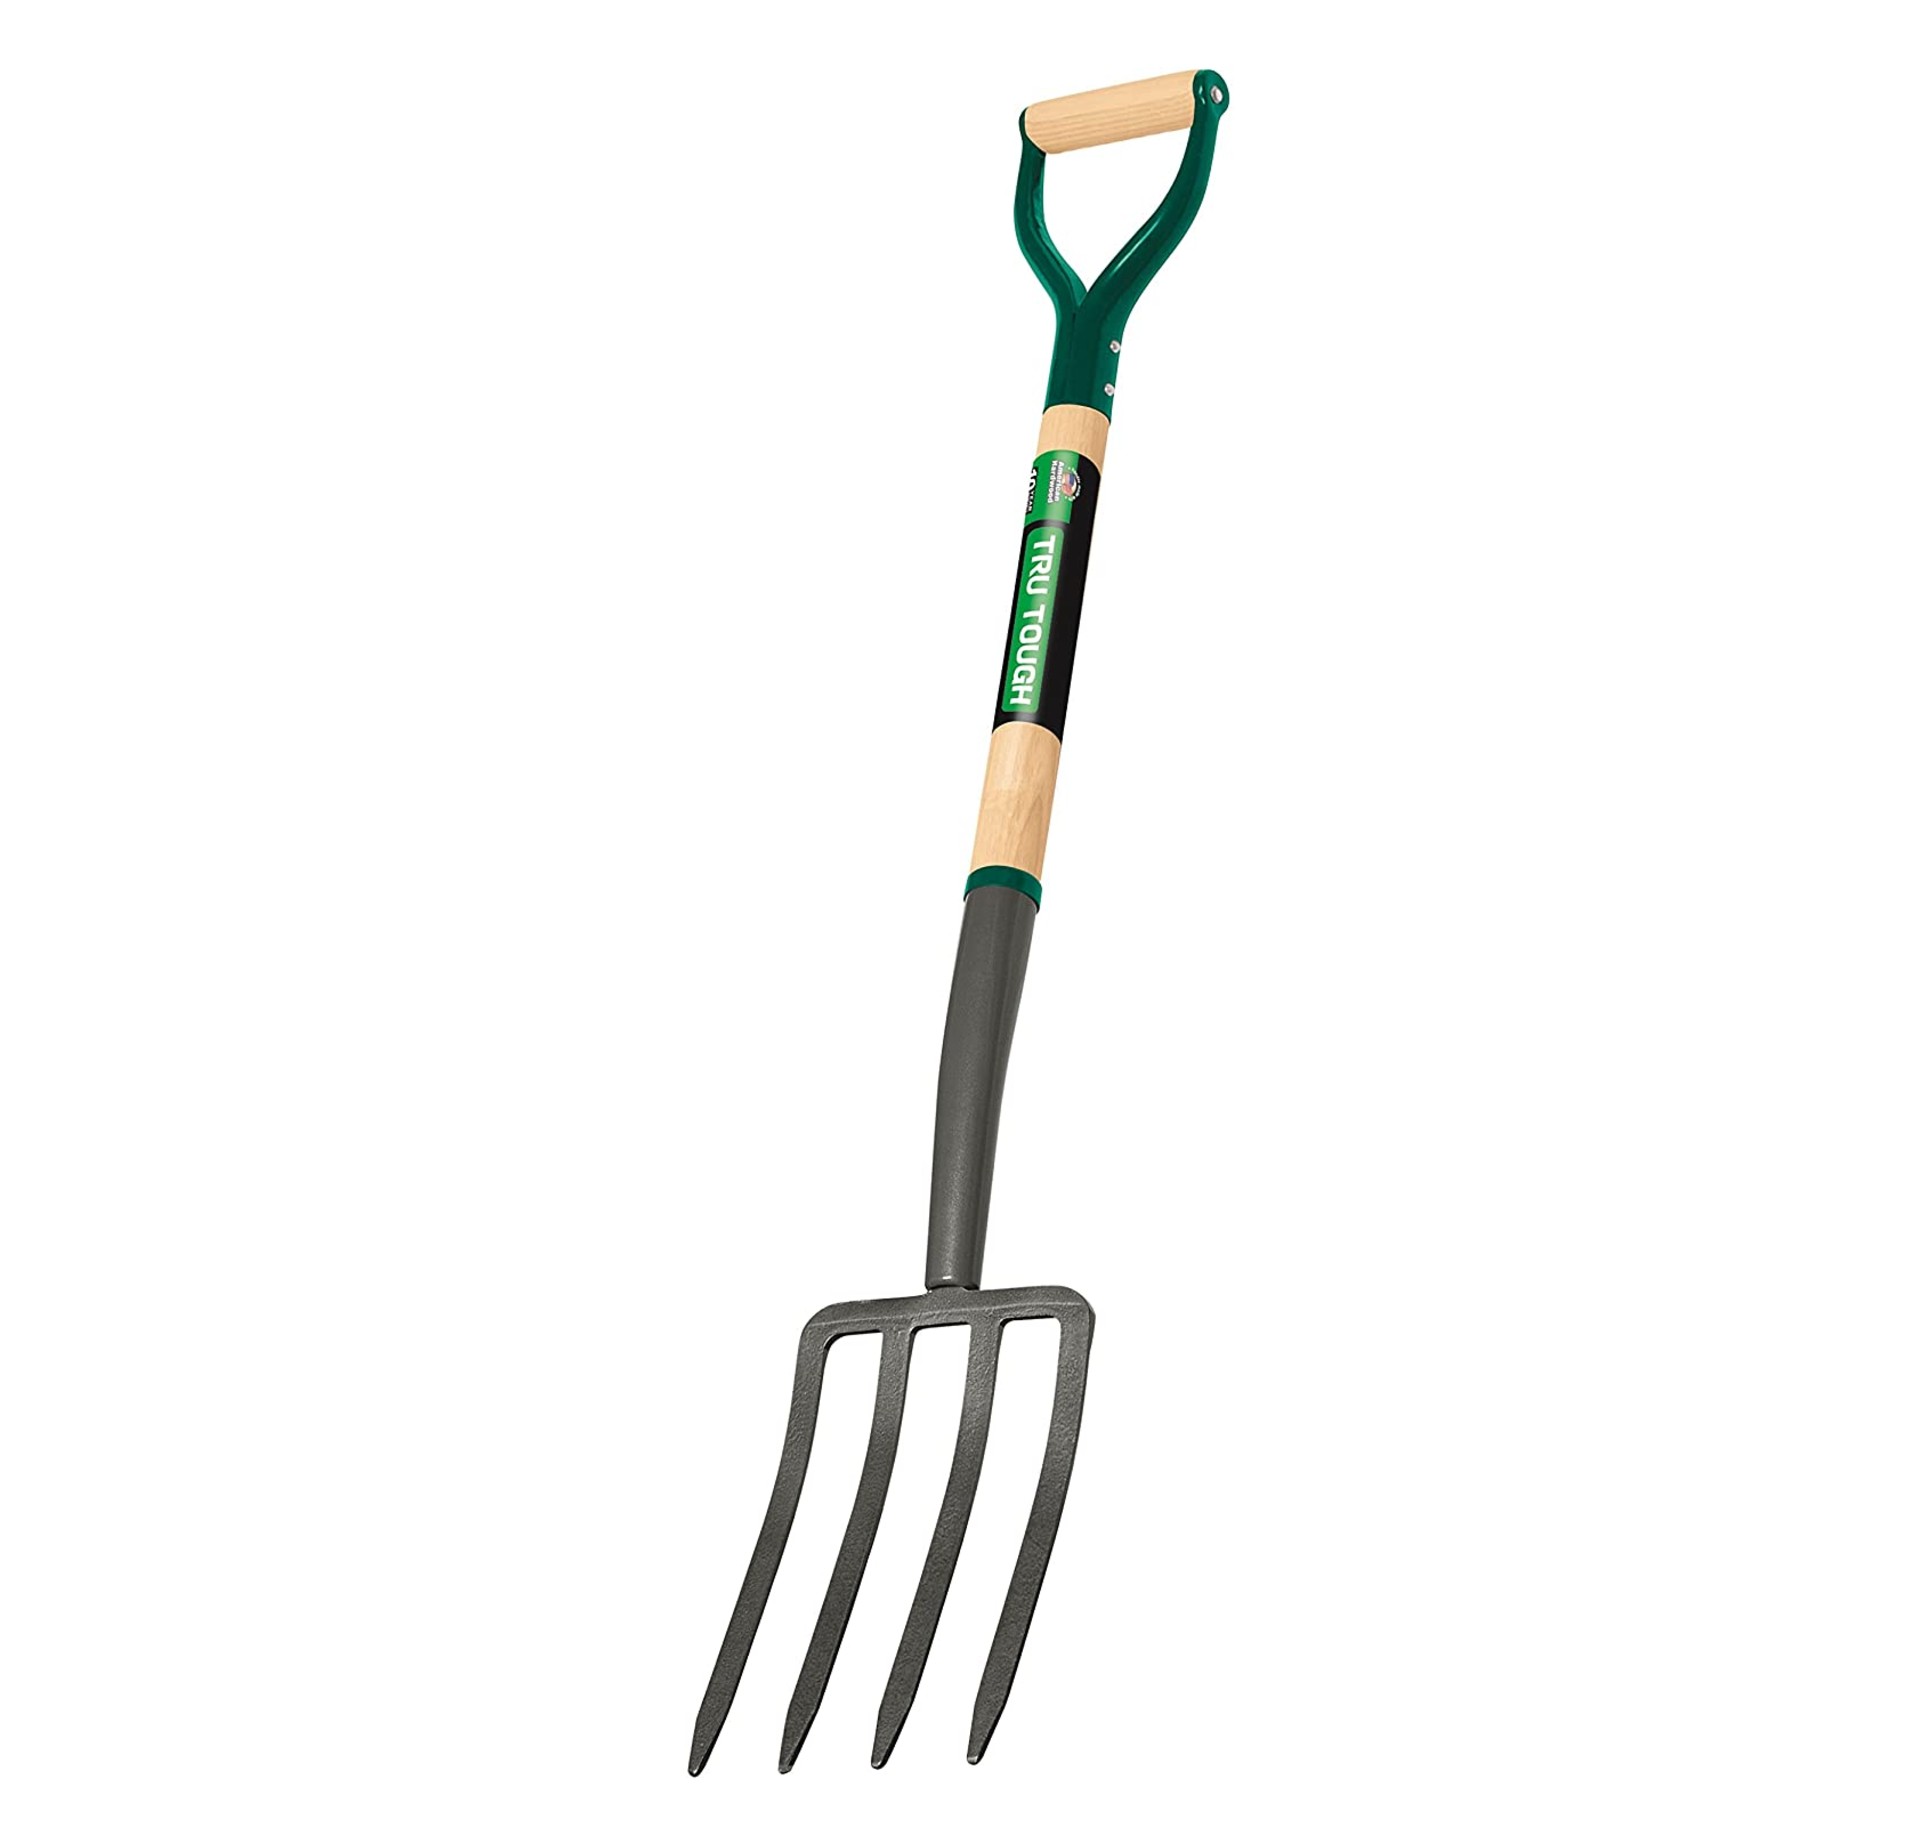 Truper 30293 Tru Tough Spading Fork